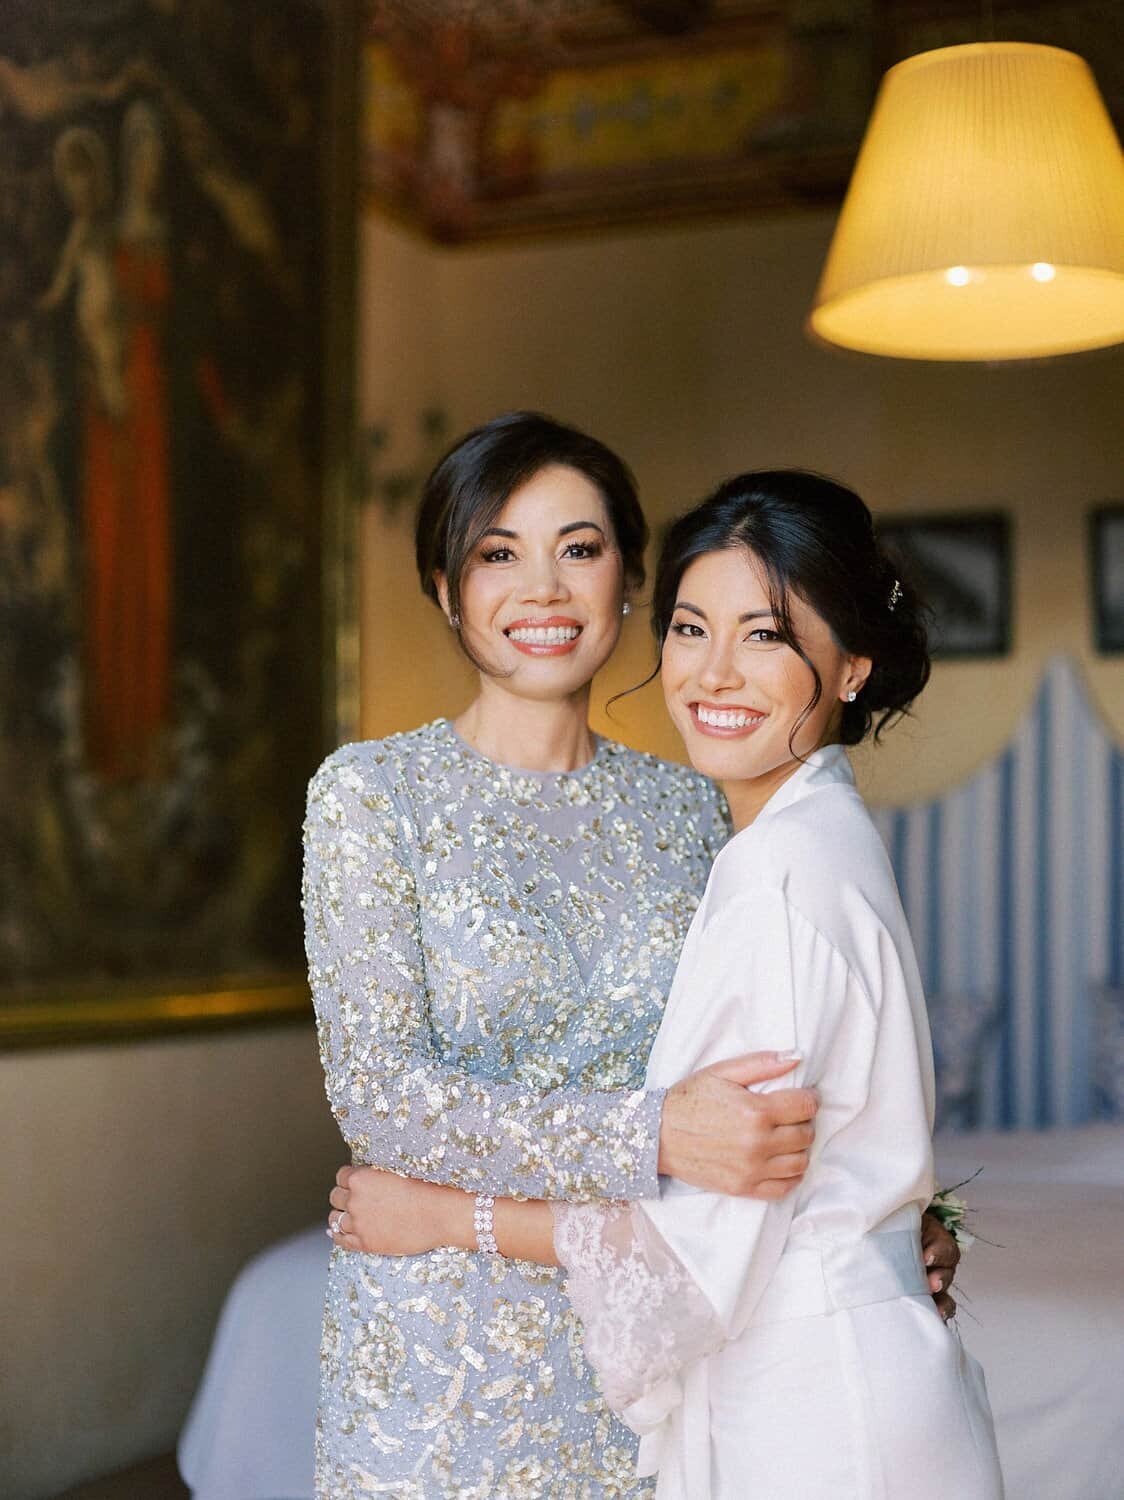 Positano-wedding-villa-San-Giacomo-bride-getting-ready-mother-asian-by-Julia-Kaptelova-Photography-210